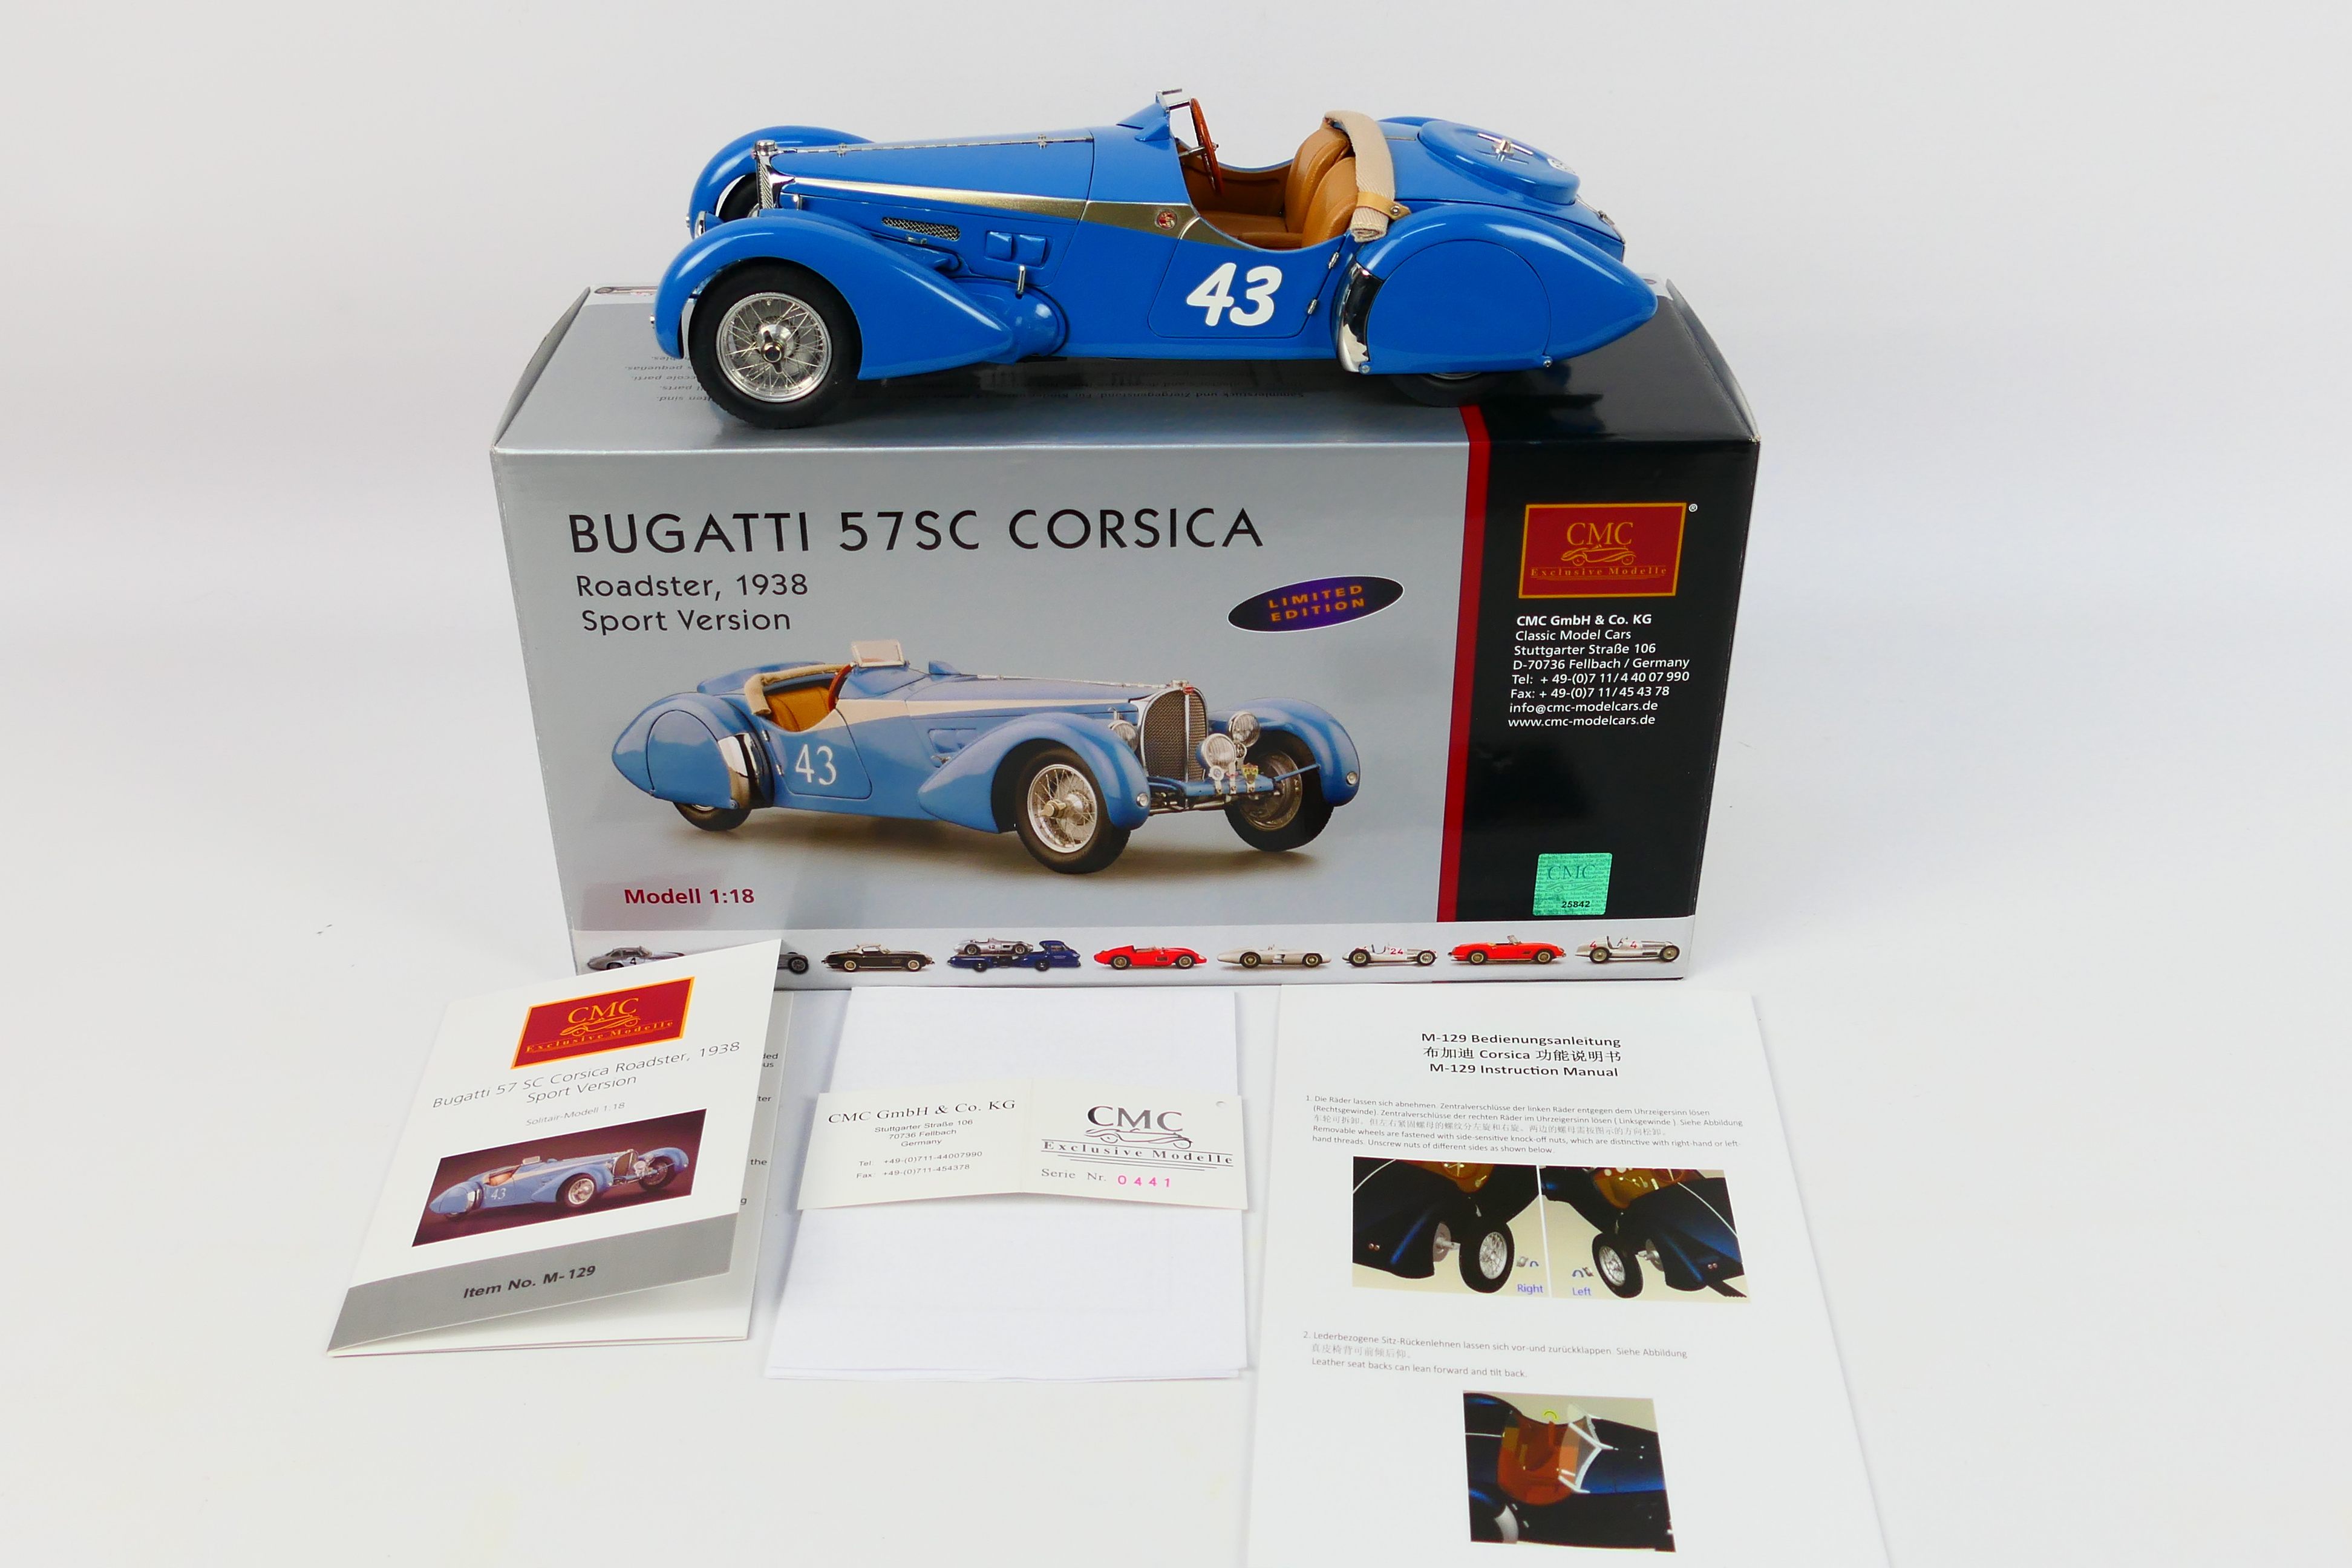 CMC - A limited edition 1938 Bugatti 57 SC Corsica in the rare Roadster Sport finish in 1:18 scale